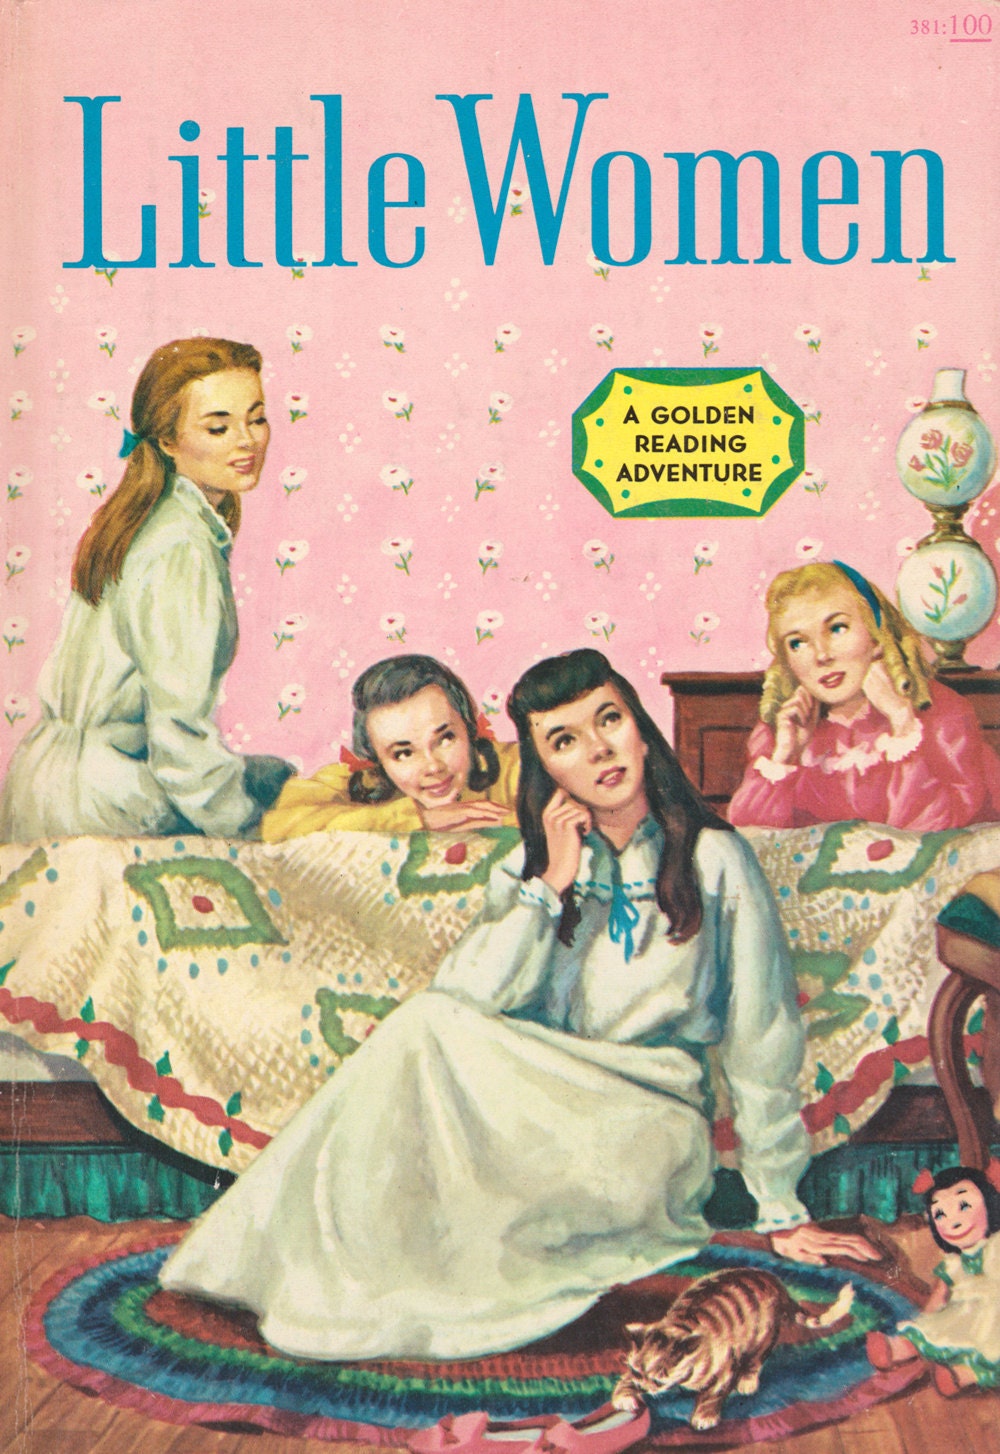 Little Women by Louisa May Alcott illustrated by ElwoodAndEloise